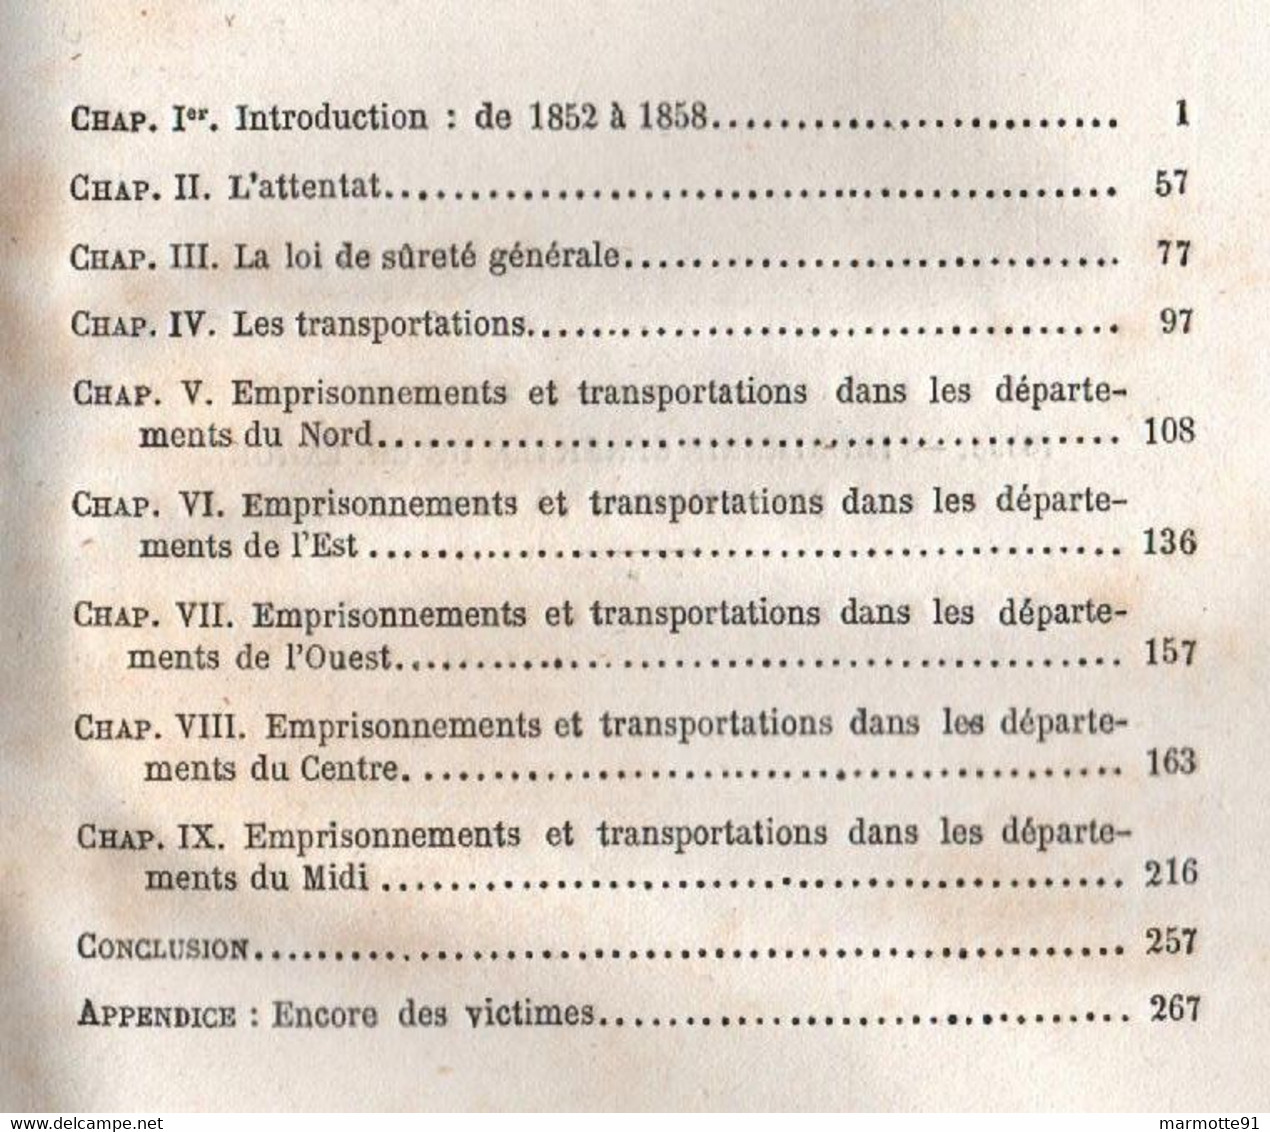 LES SUSPECTS EN 1858 LOI DE SURETE GENERALE EMPRISONNEMENTS TRANSPORTATIONS PAR E. TENOT ET A. DUBOST - Sociologie